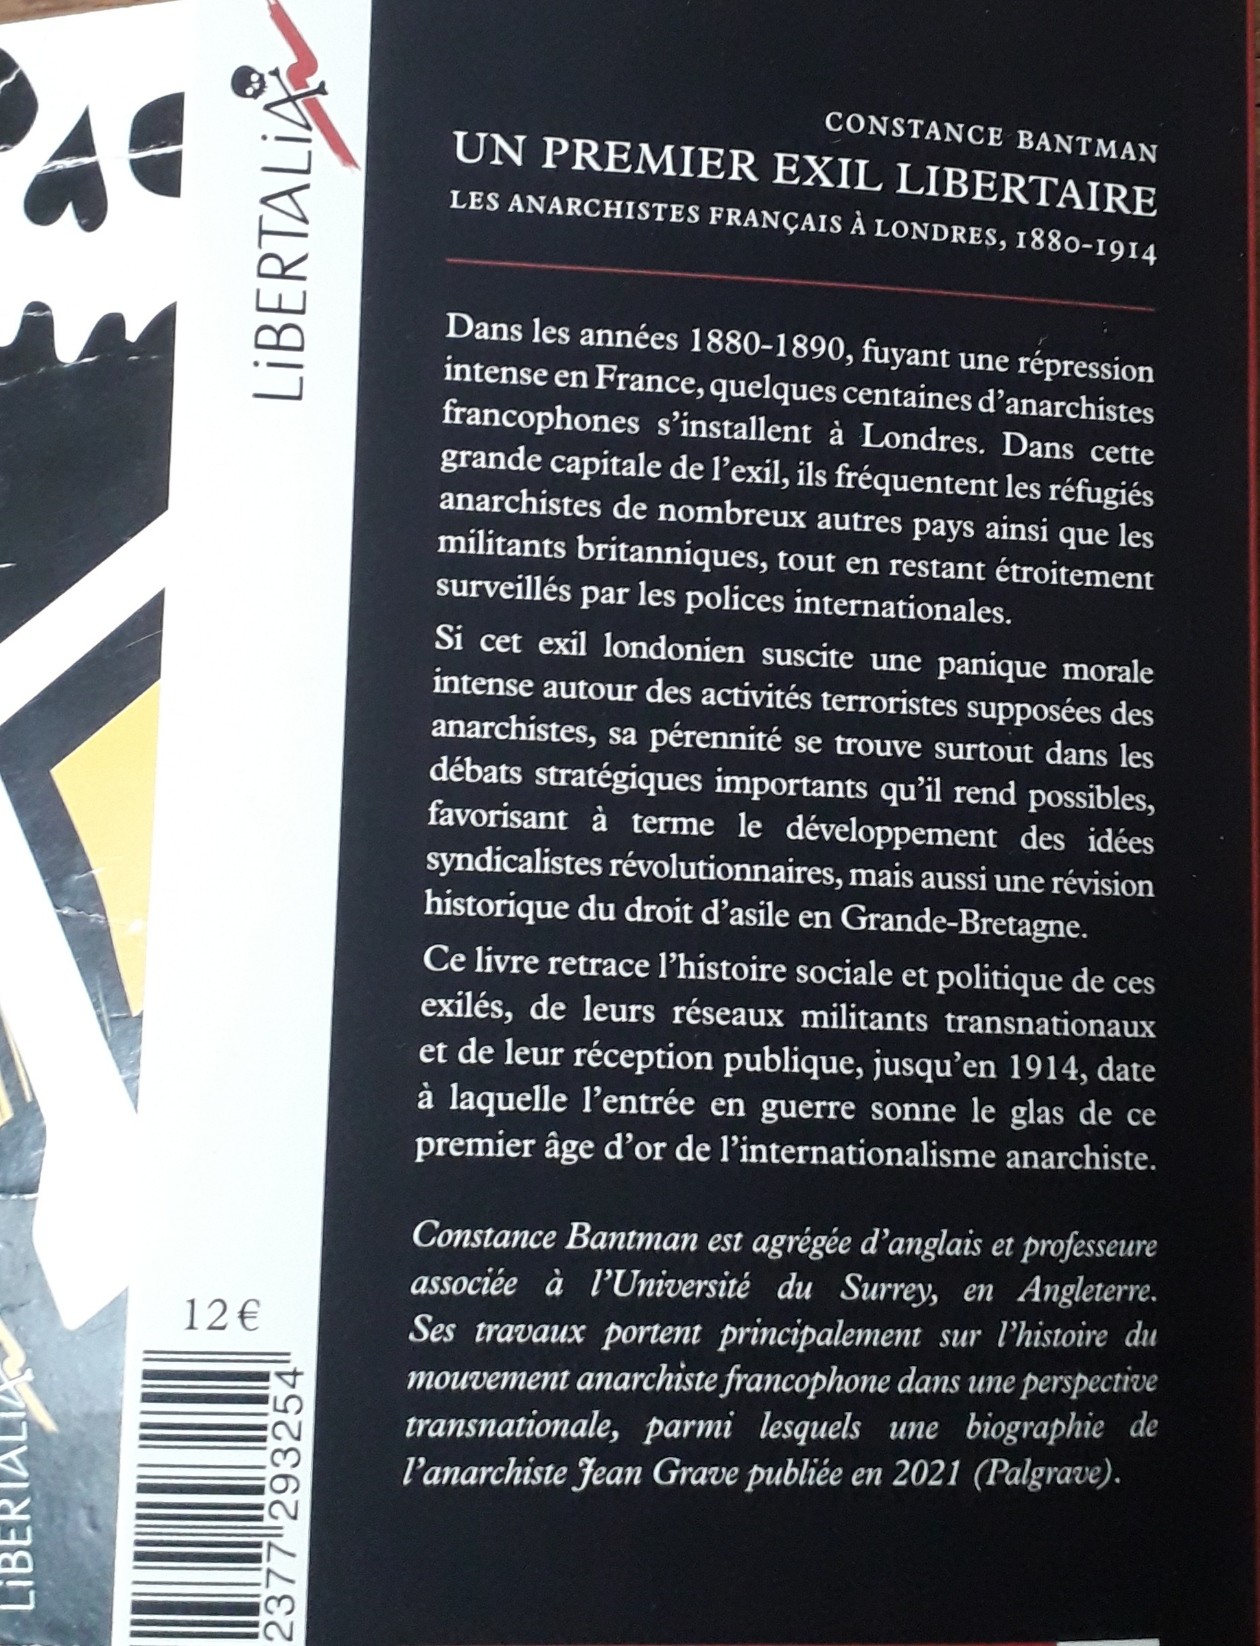 4ème de couverture du livre de Constance Bantman, "Un premier exil libertaire". Les anarchistes français à Londres, 1880-1914.
Couverture de Bruno Bartkowiak. 
Éditions Libertalia. 
Il sort le vendredi 22 mars prochain.